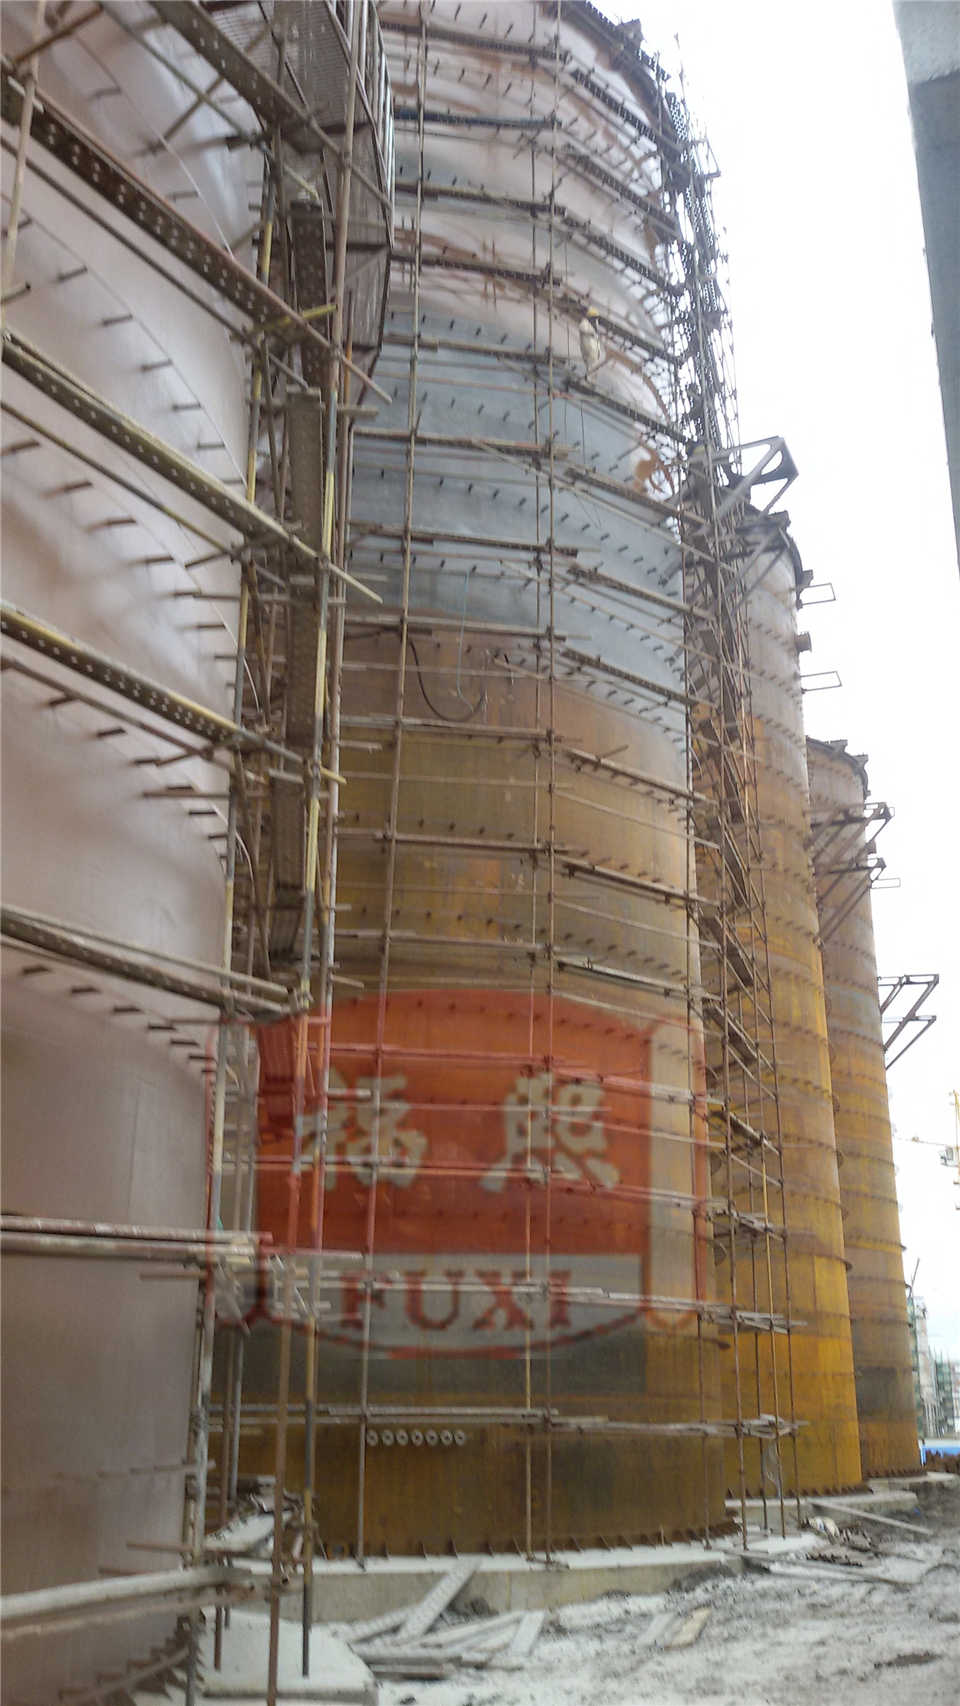 Zapobieganie budowie zbiornika beztlenowego w rosyjskiej fabryce papieru